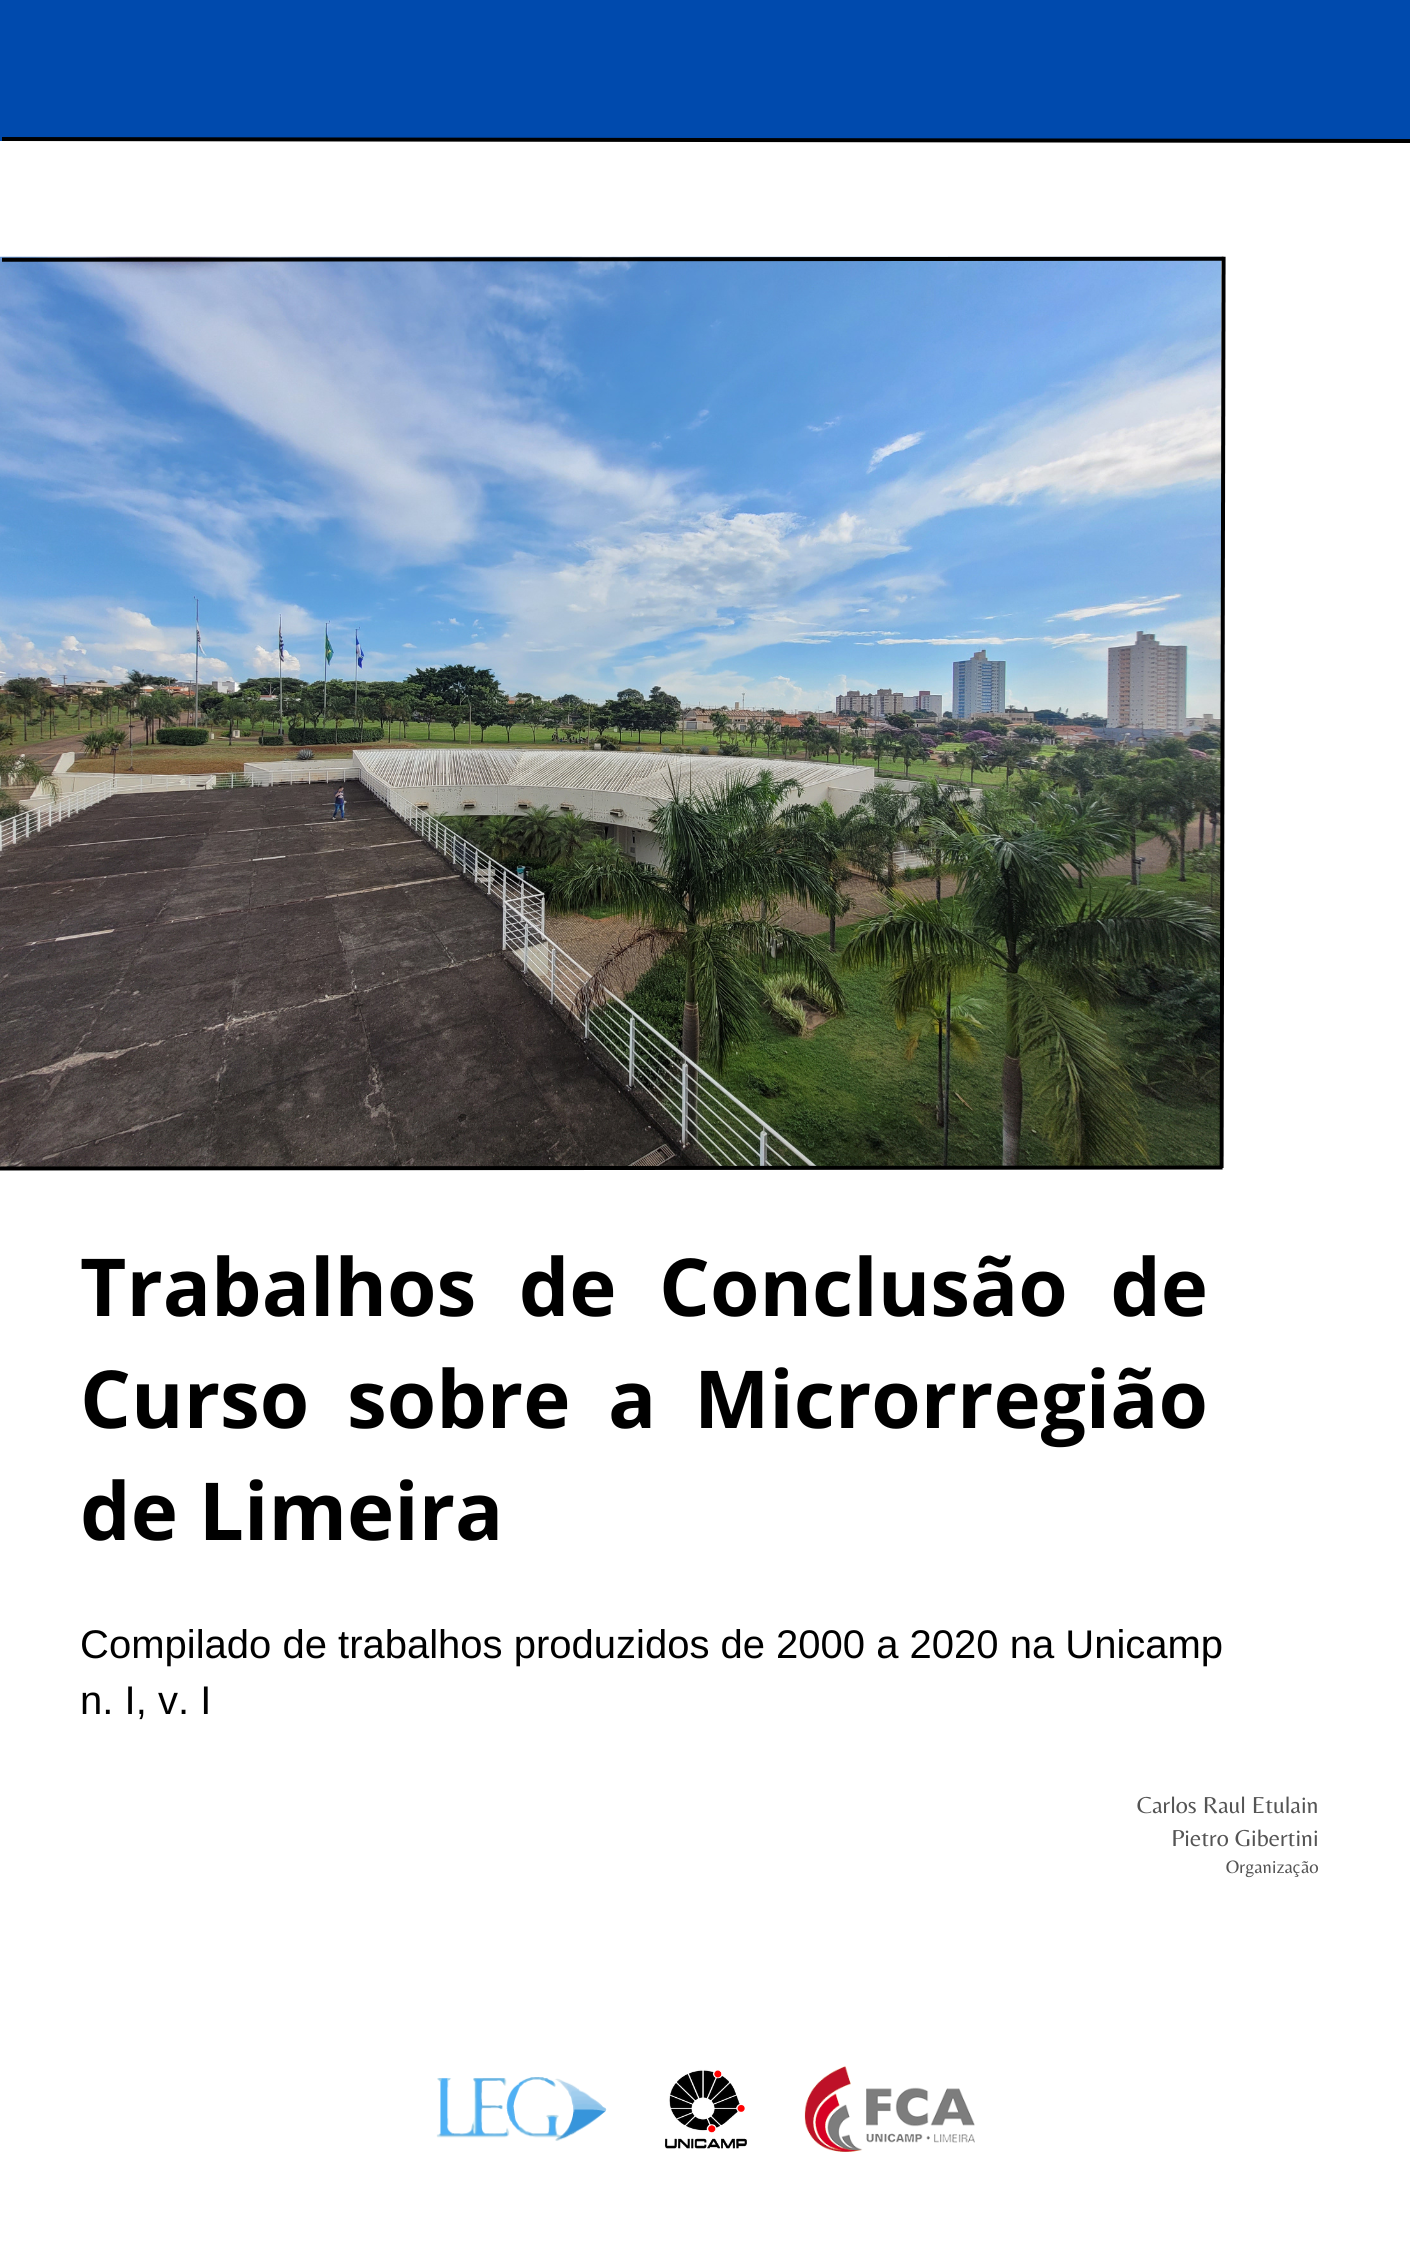 Capa do livro "Trabalhos de Conclusão de curso sobre a Microrregião de Limeira (MRL)"